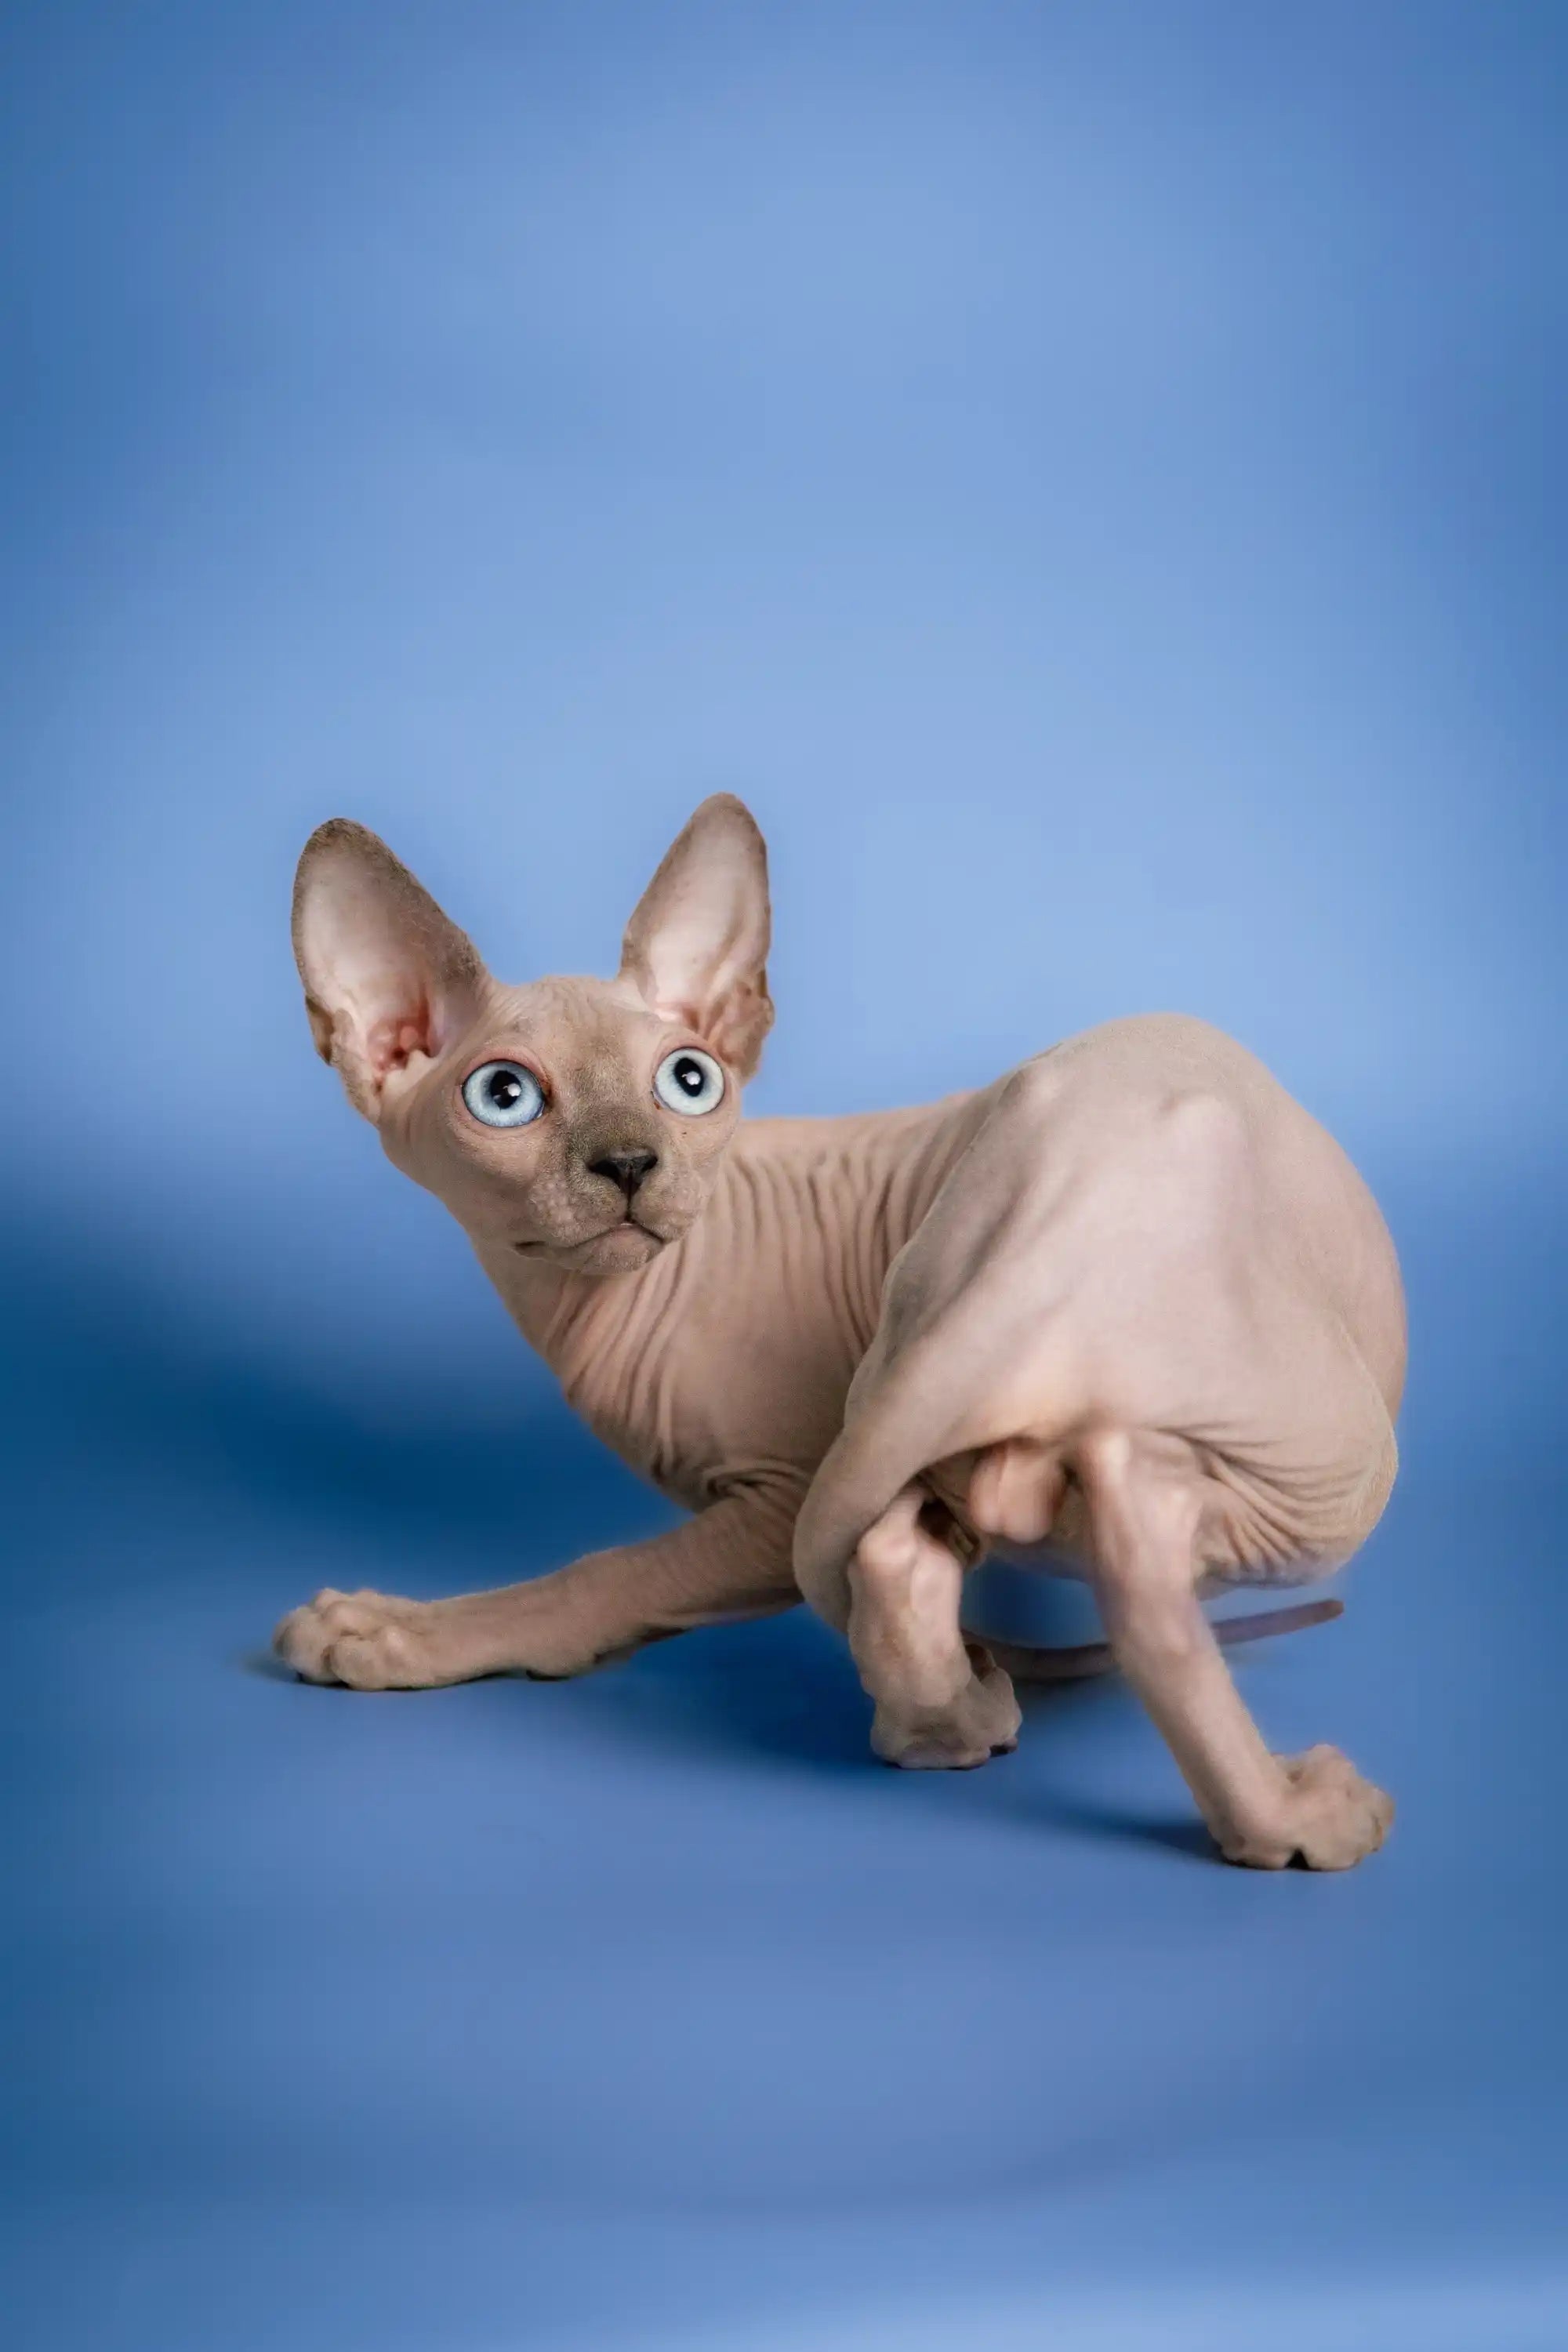 Sphynx Cats for Sale | Kittens For Carl | Kitten